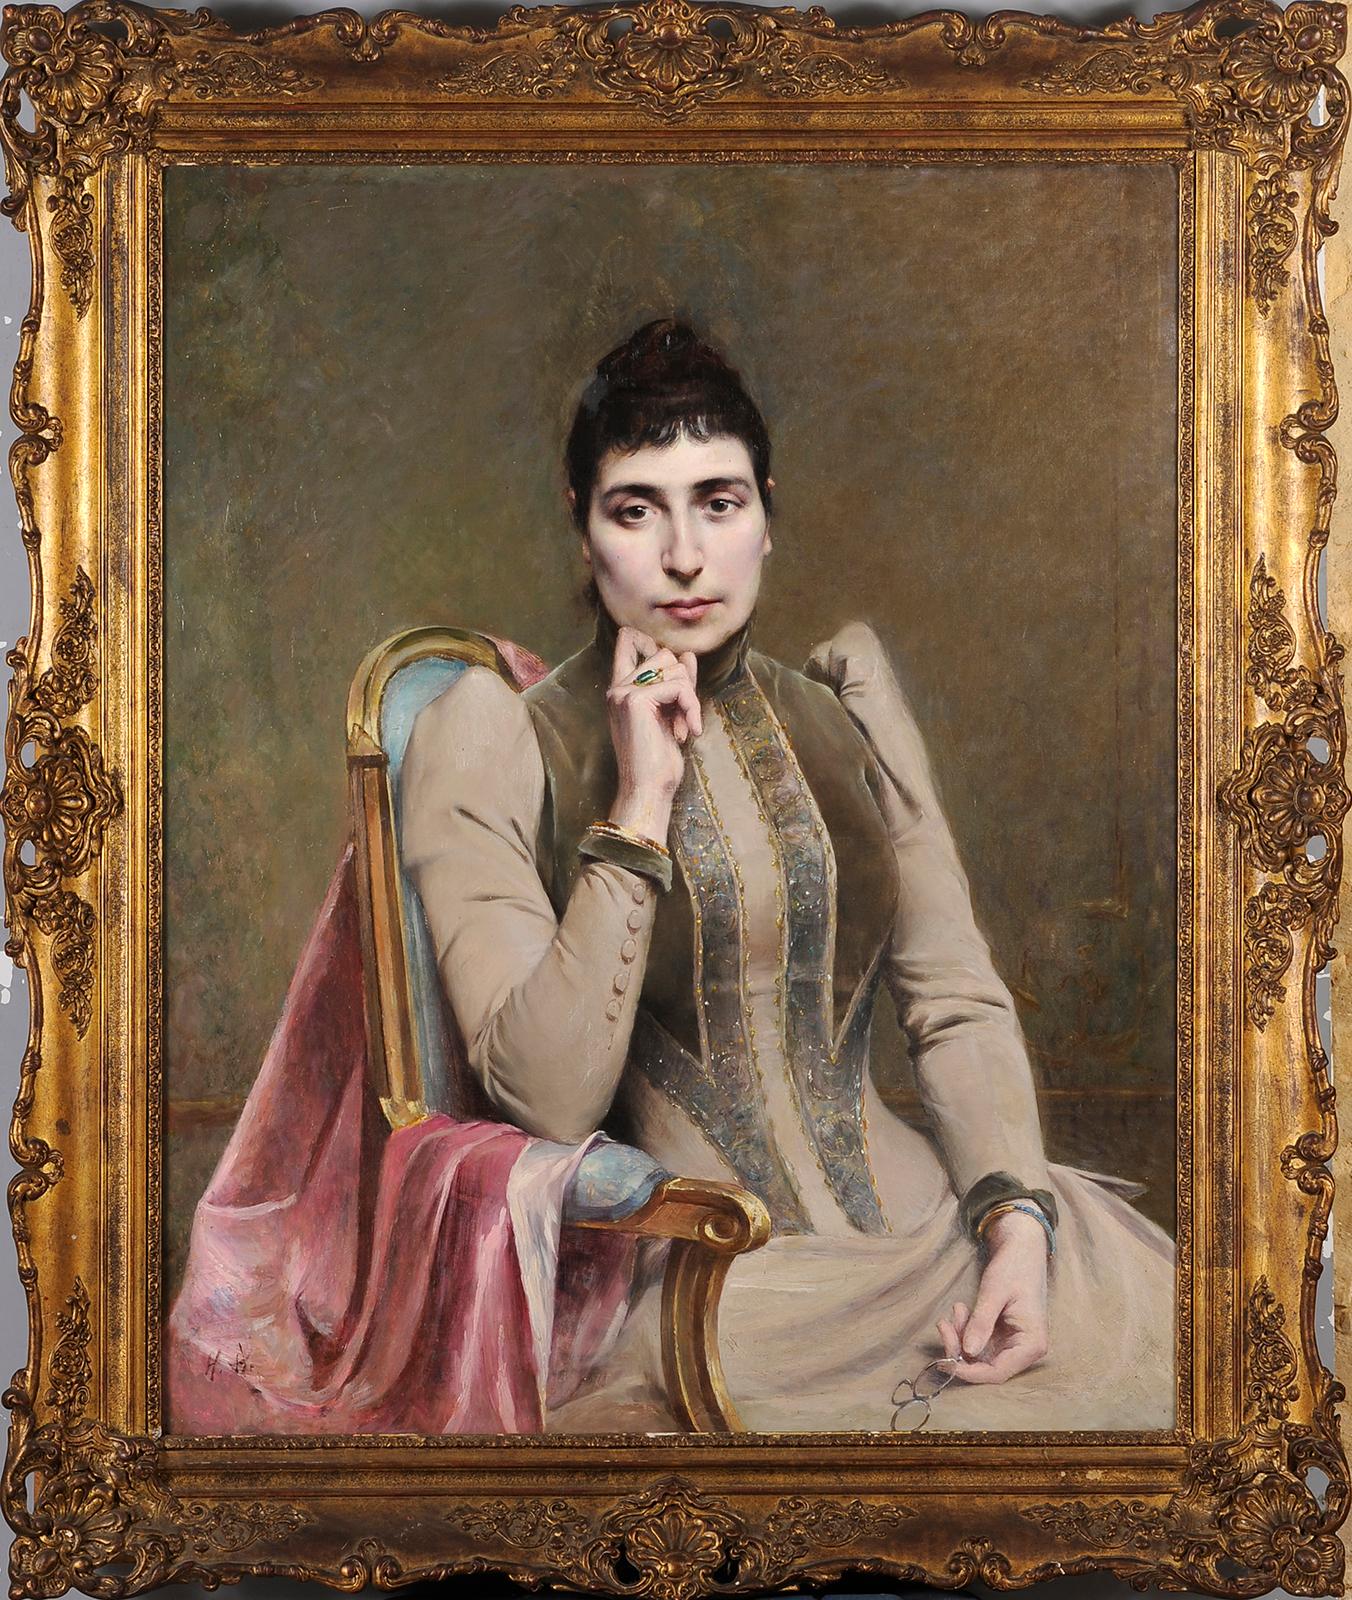 Unknown Portrait Painting - Women portrait